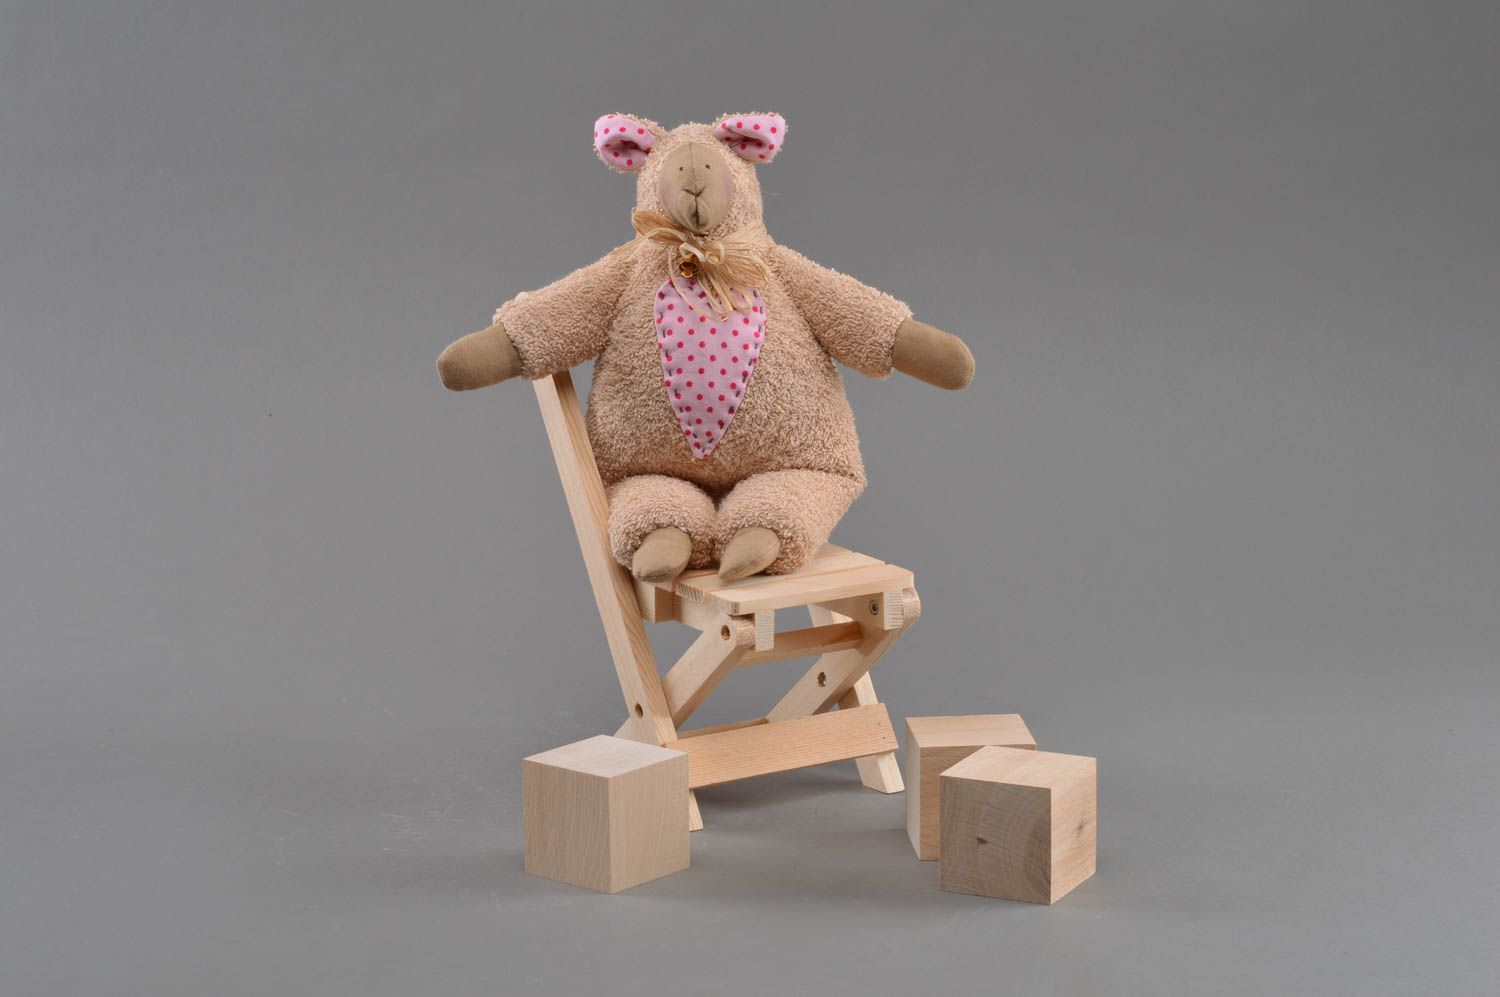 Textil Kuscheltier Schaf aus Mohär beige weich handmade Spielzeug für Kinder foto 3